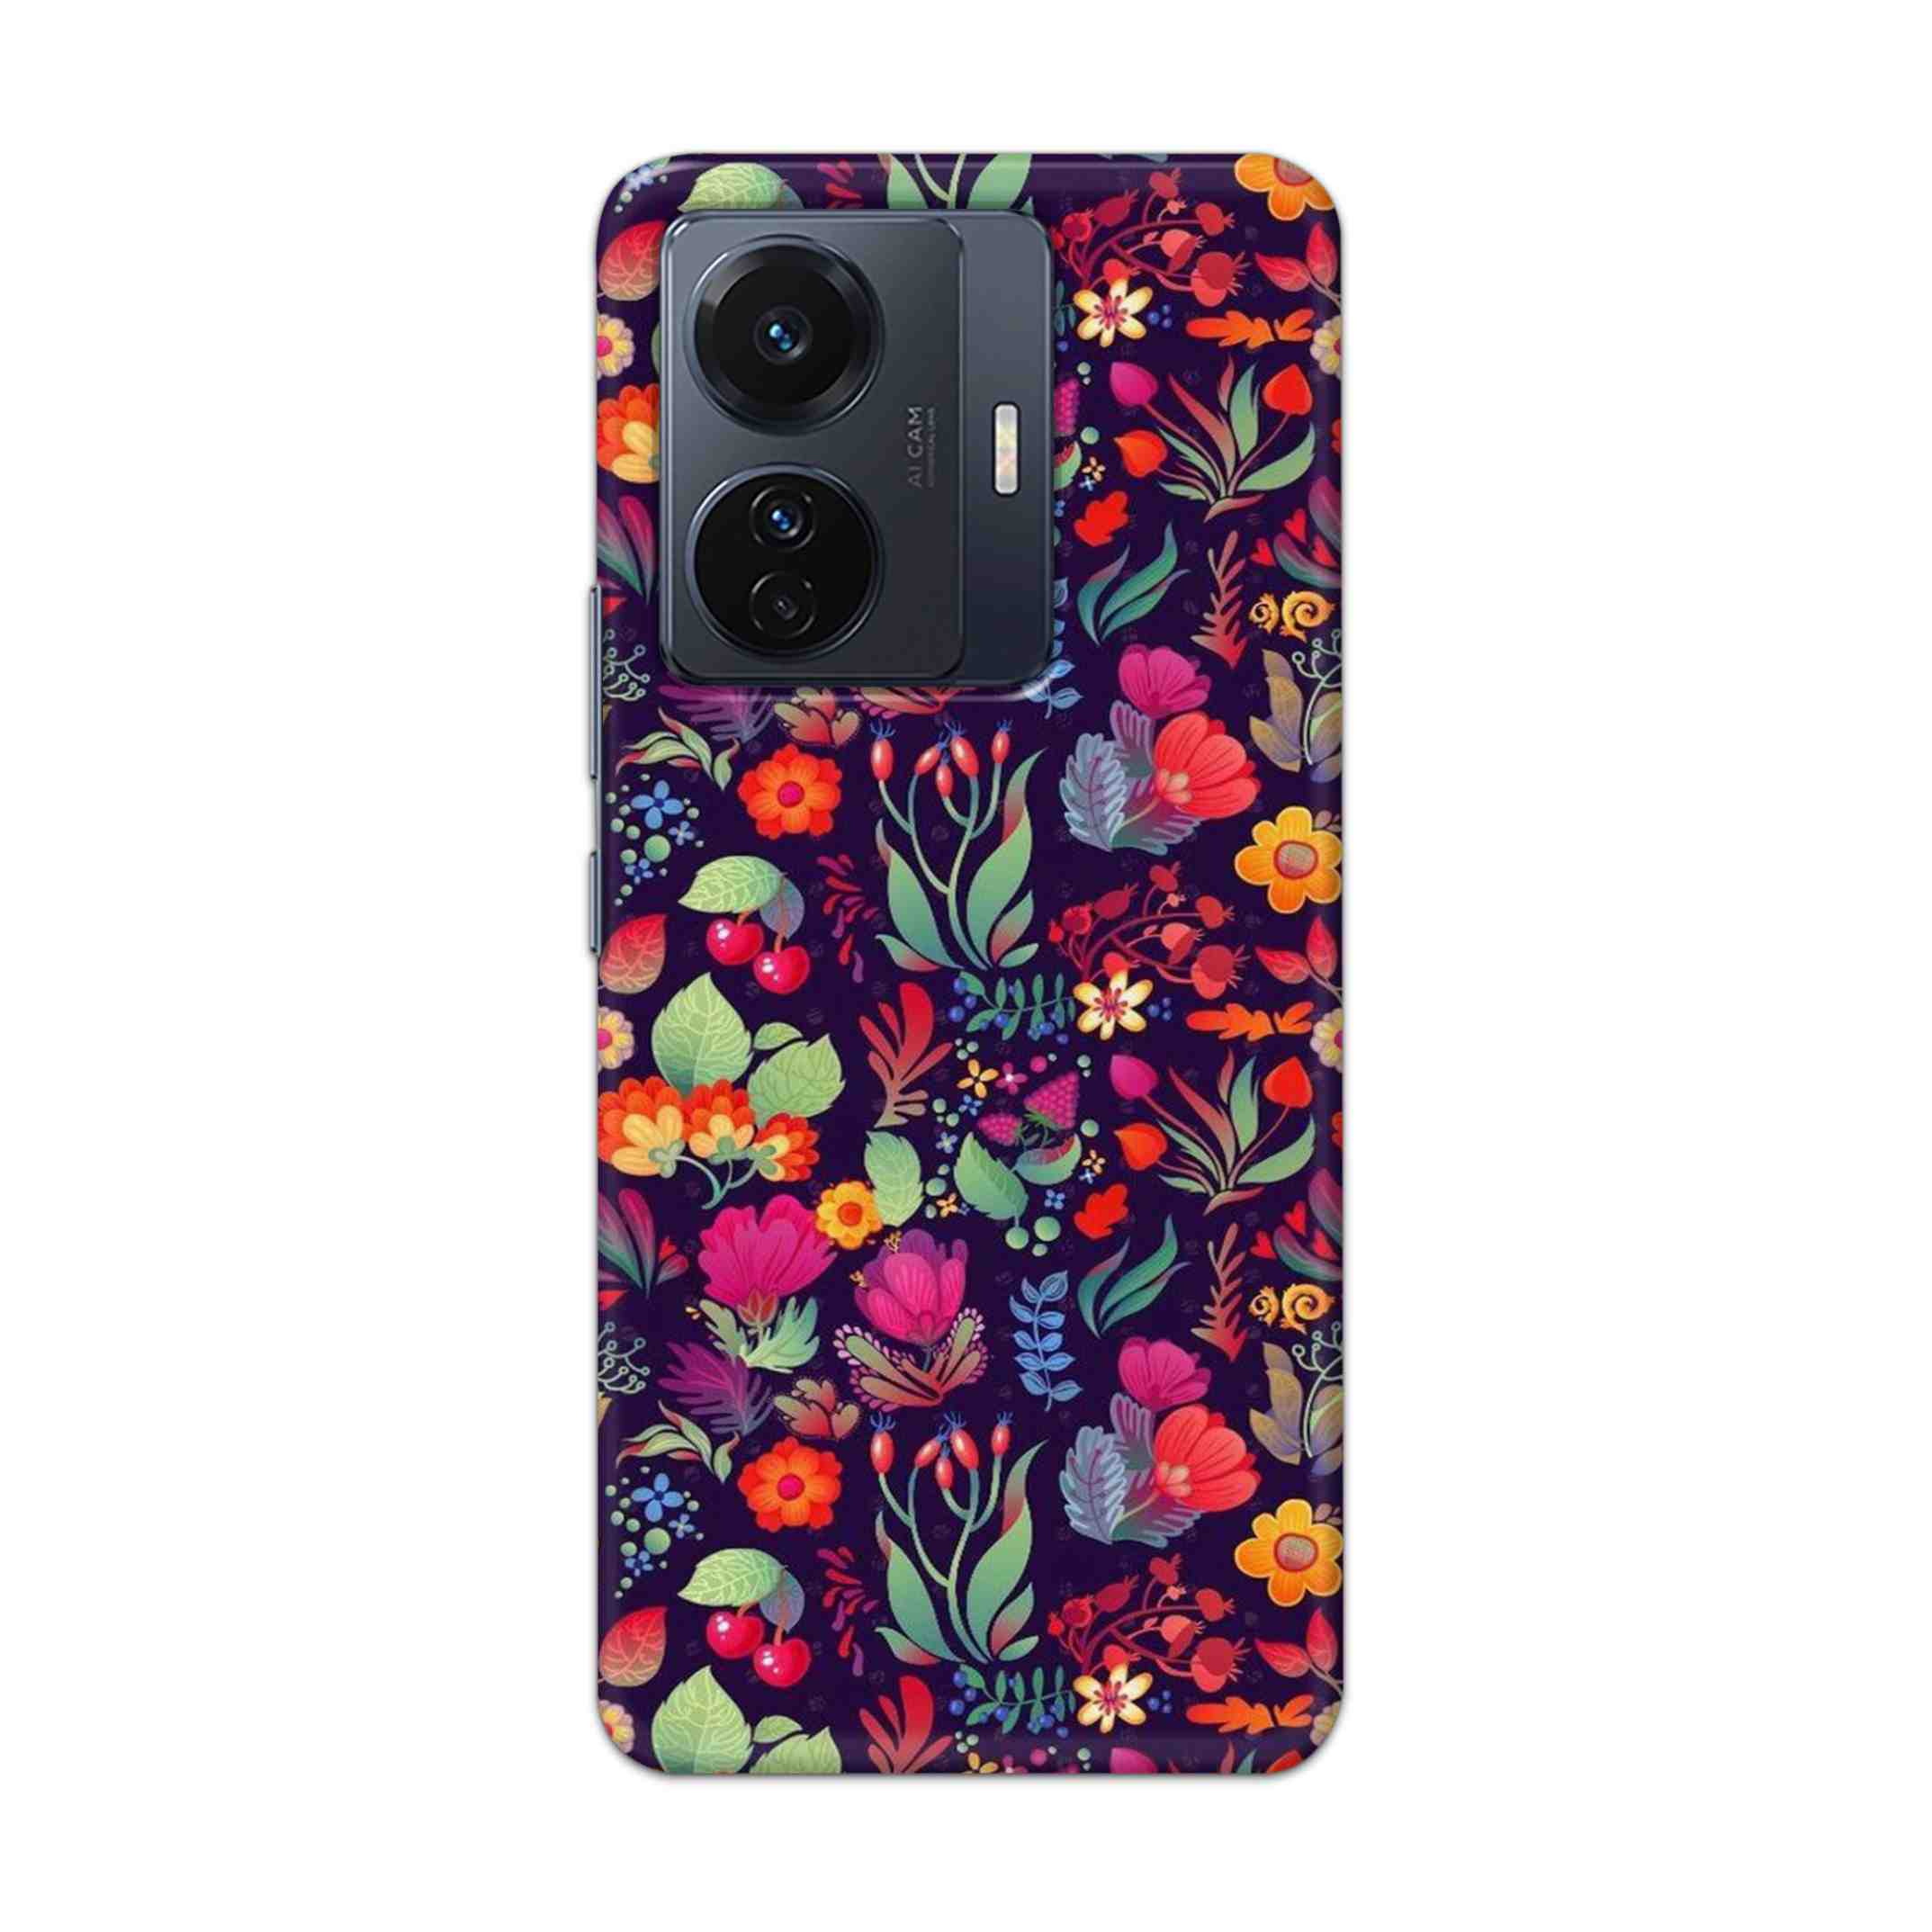 Buy Fruits Flower Hard Back Mobile Phone Case Cover For Vivo T1 Pro 5G Online